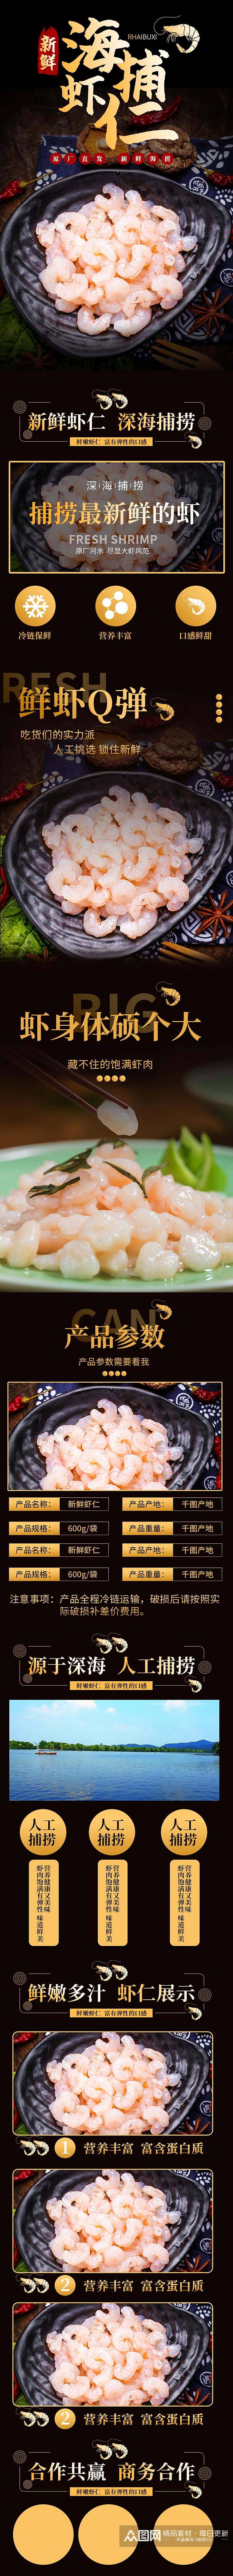 新鲜海捕虾仁食品电商详情页素材